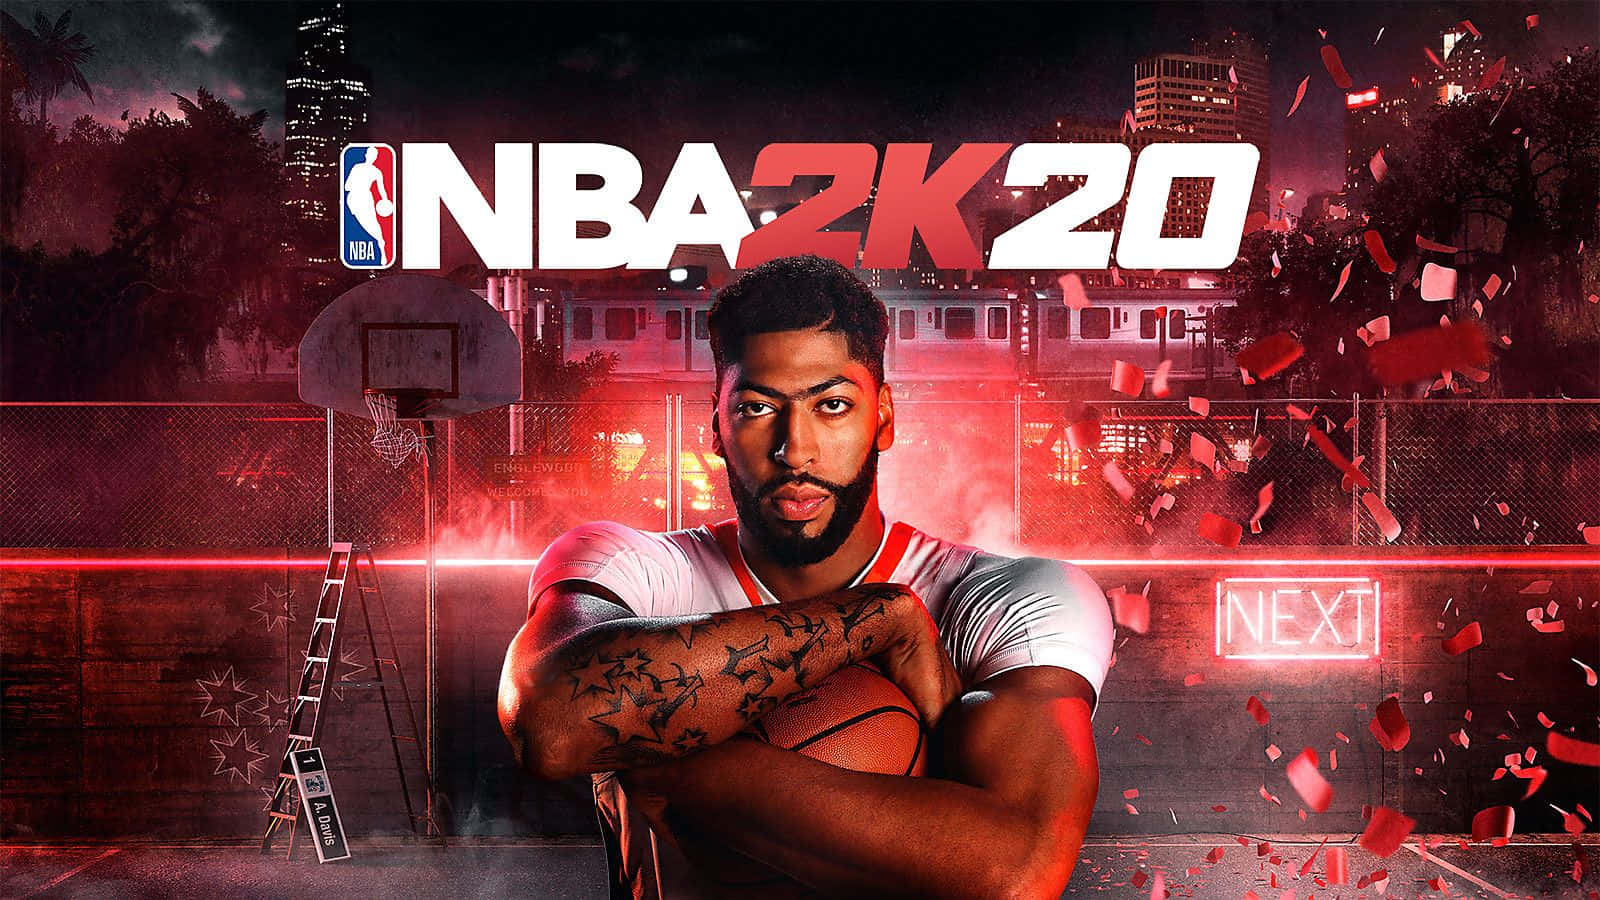 NBA 2K20 Desktop Wallpaper featuring star players Wallpaper